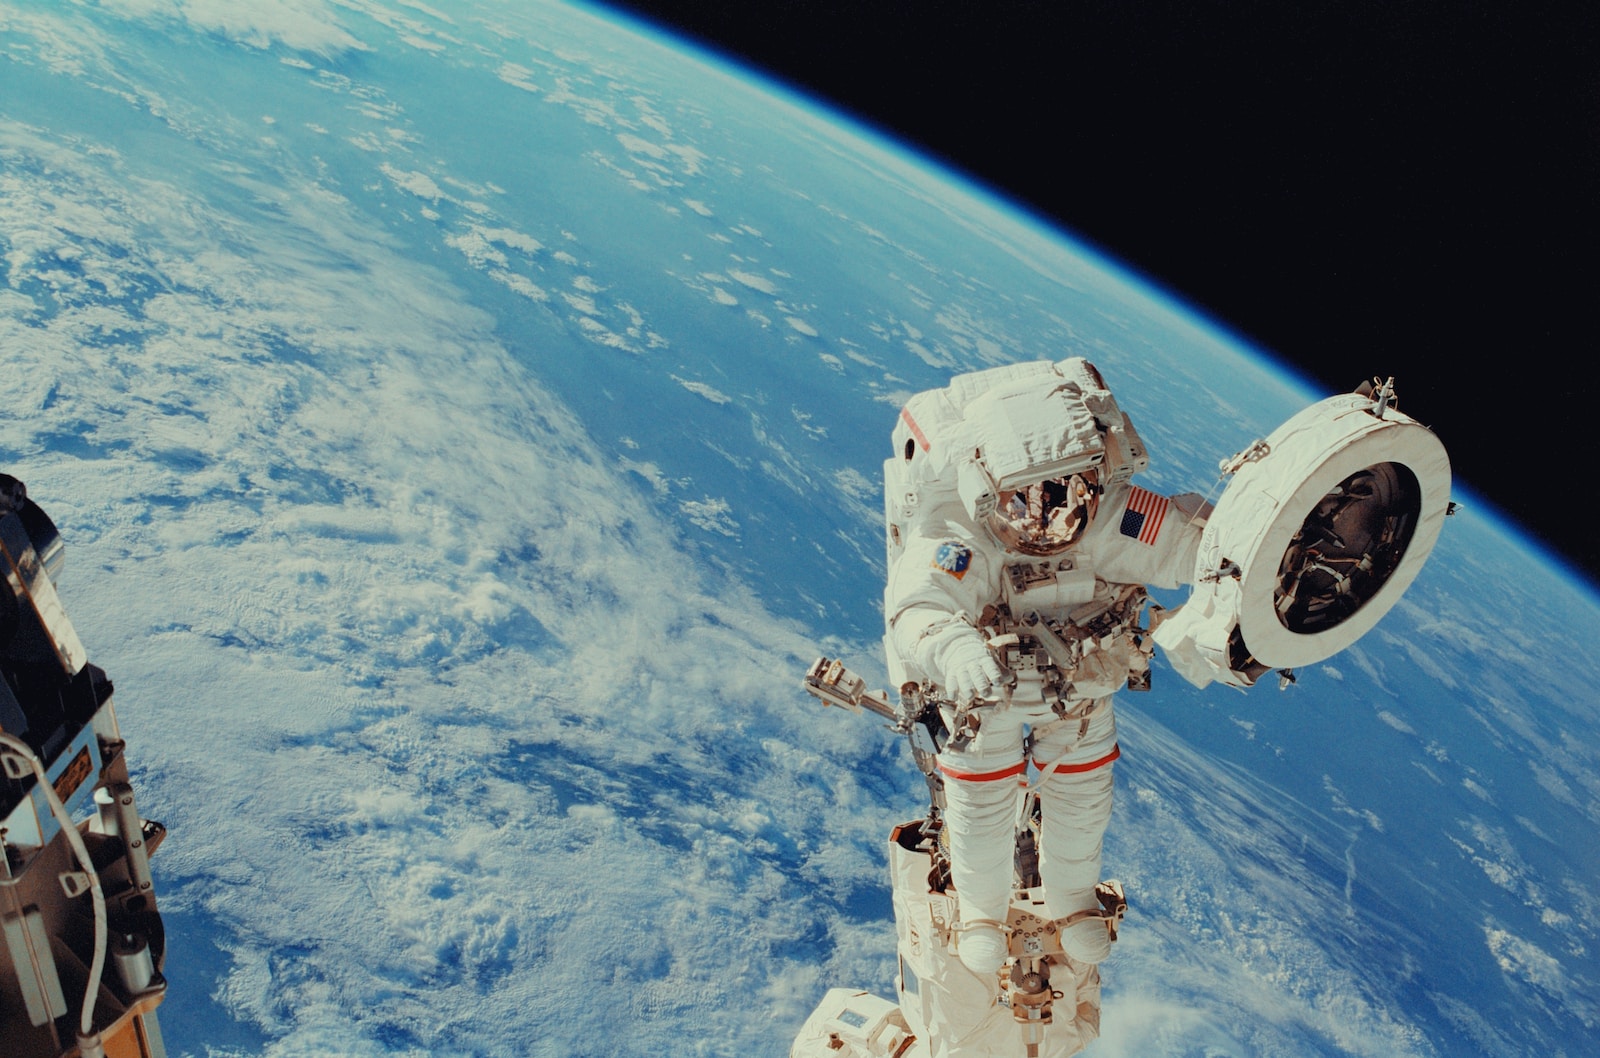 La Nasa développe son propre ChatGPT pour aider les astronautes dans leurs missions